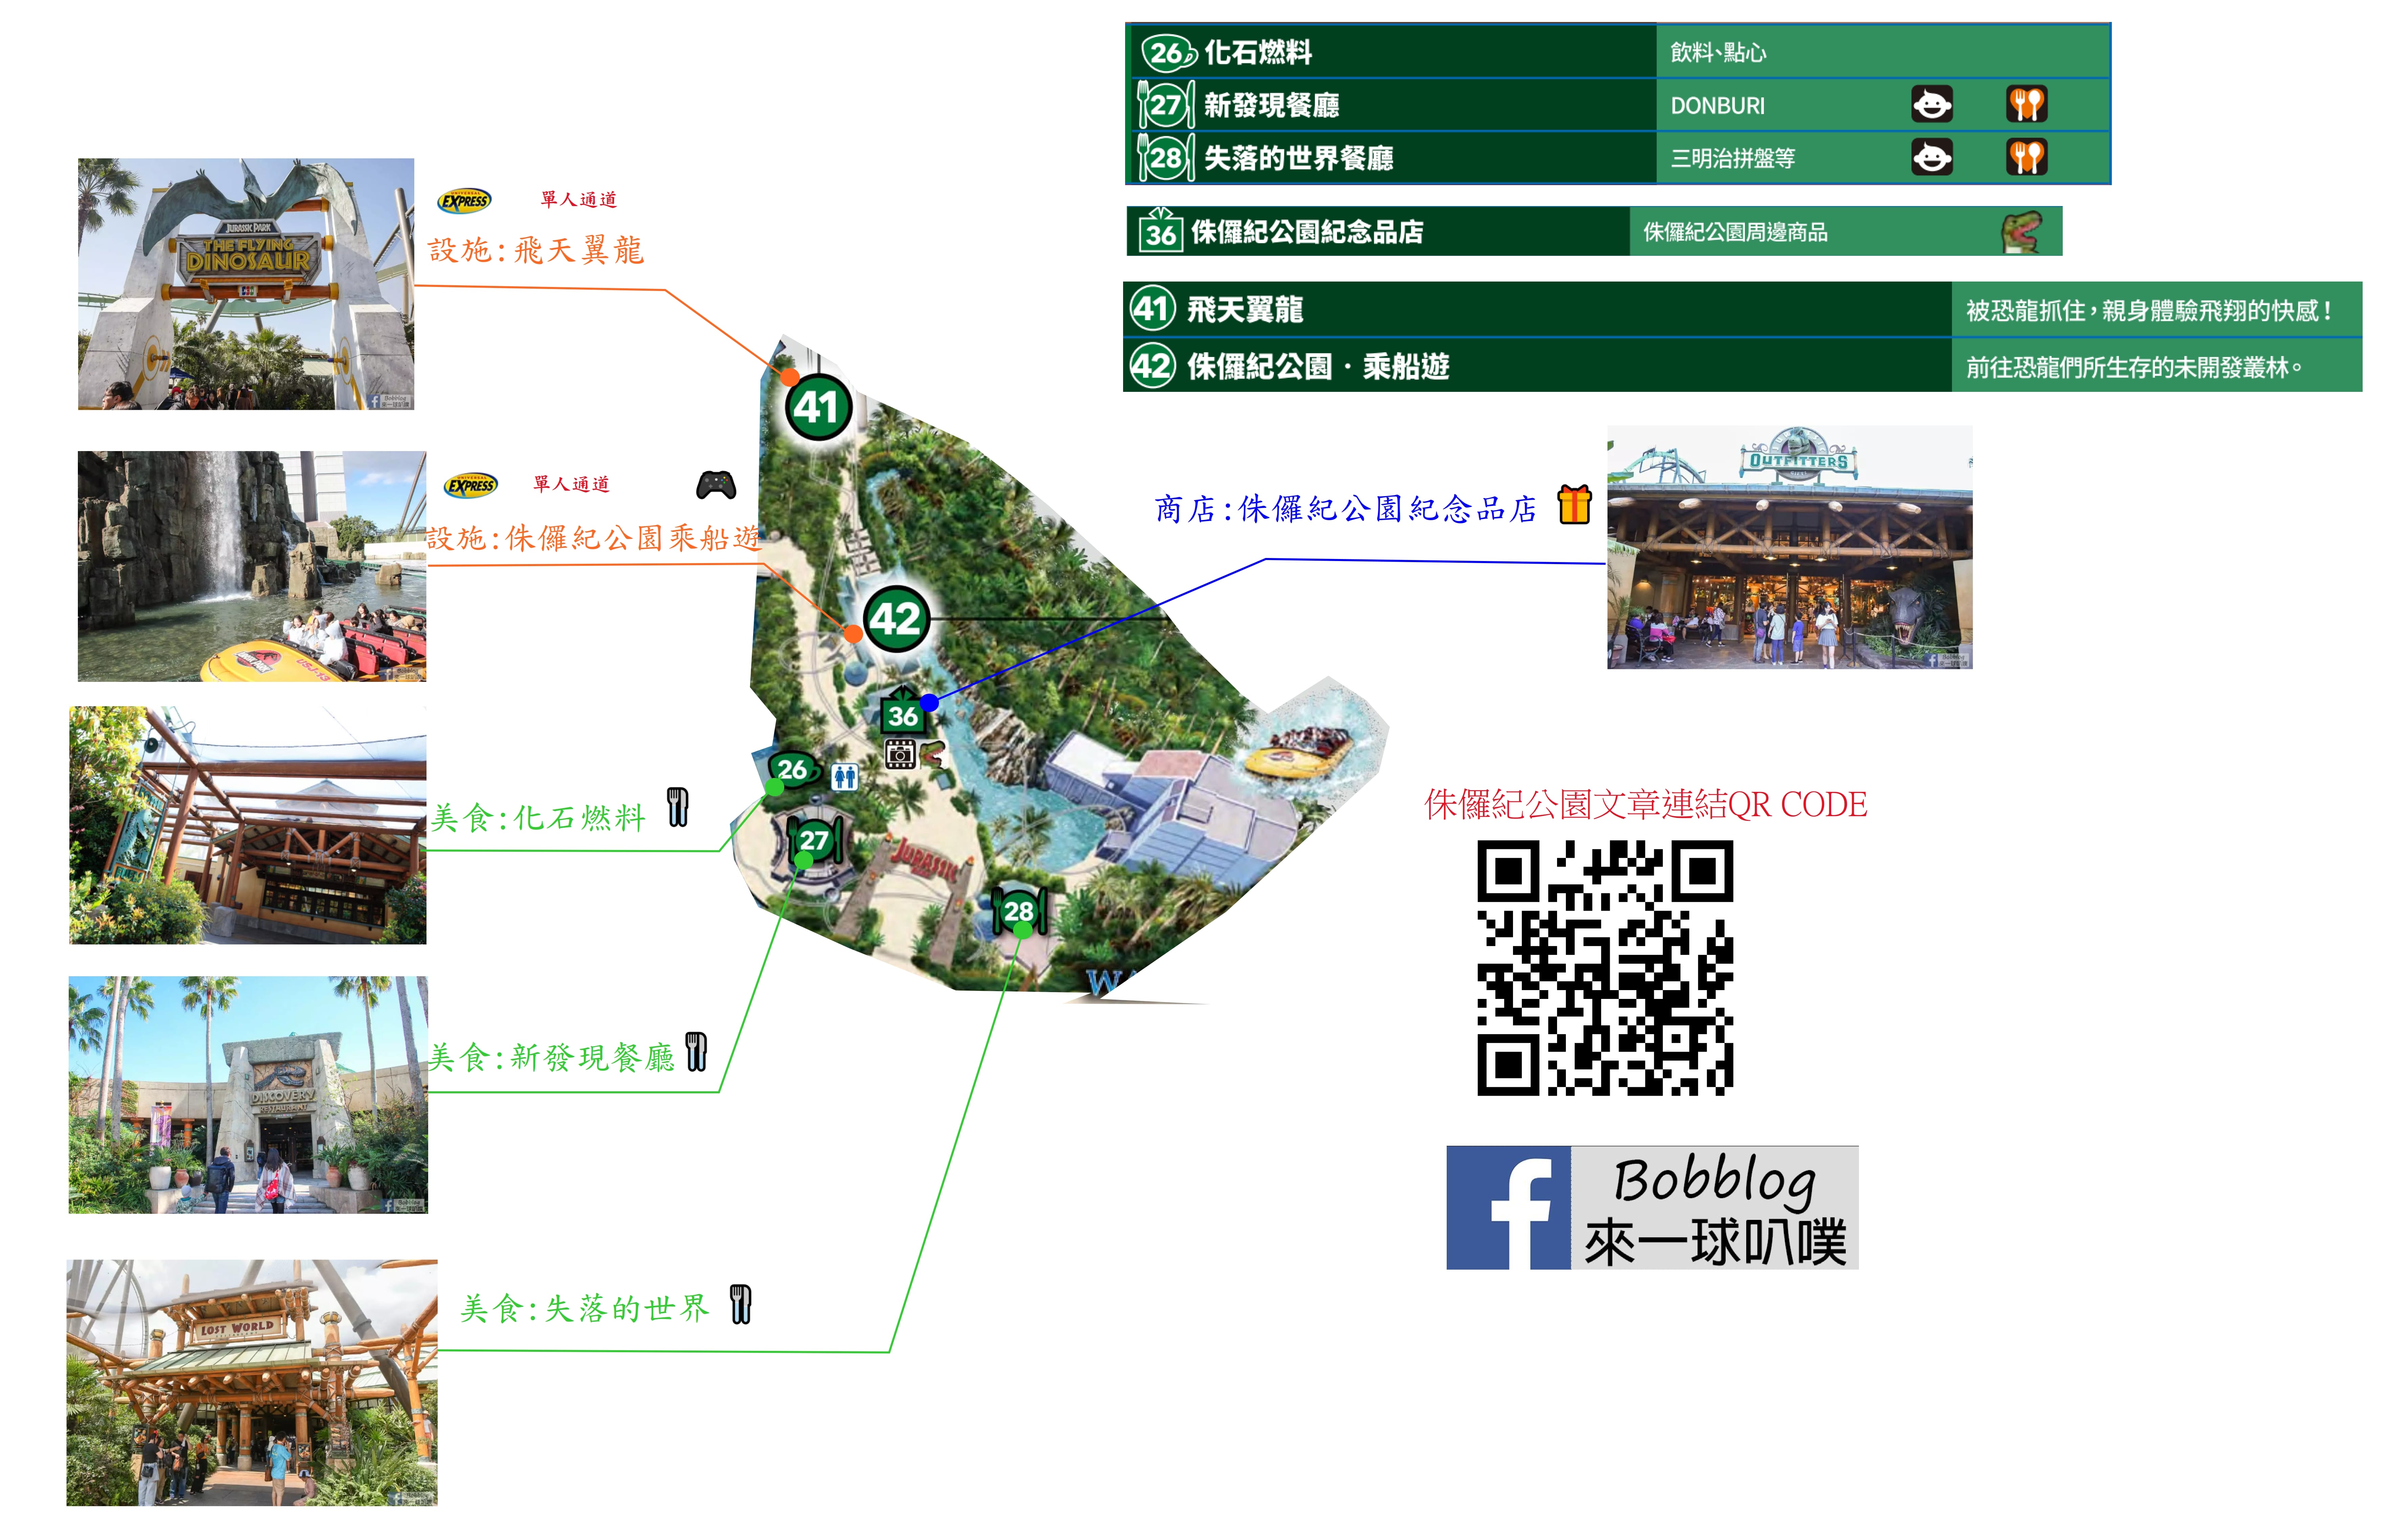 日本大阪環球影城地圖下載整理(哈利波特、瑪利歐、小小兵樂園)